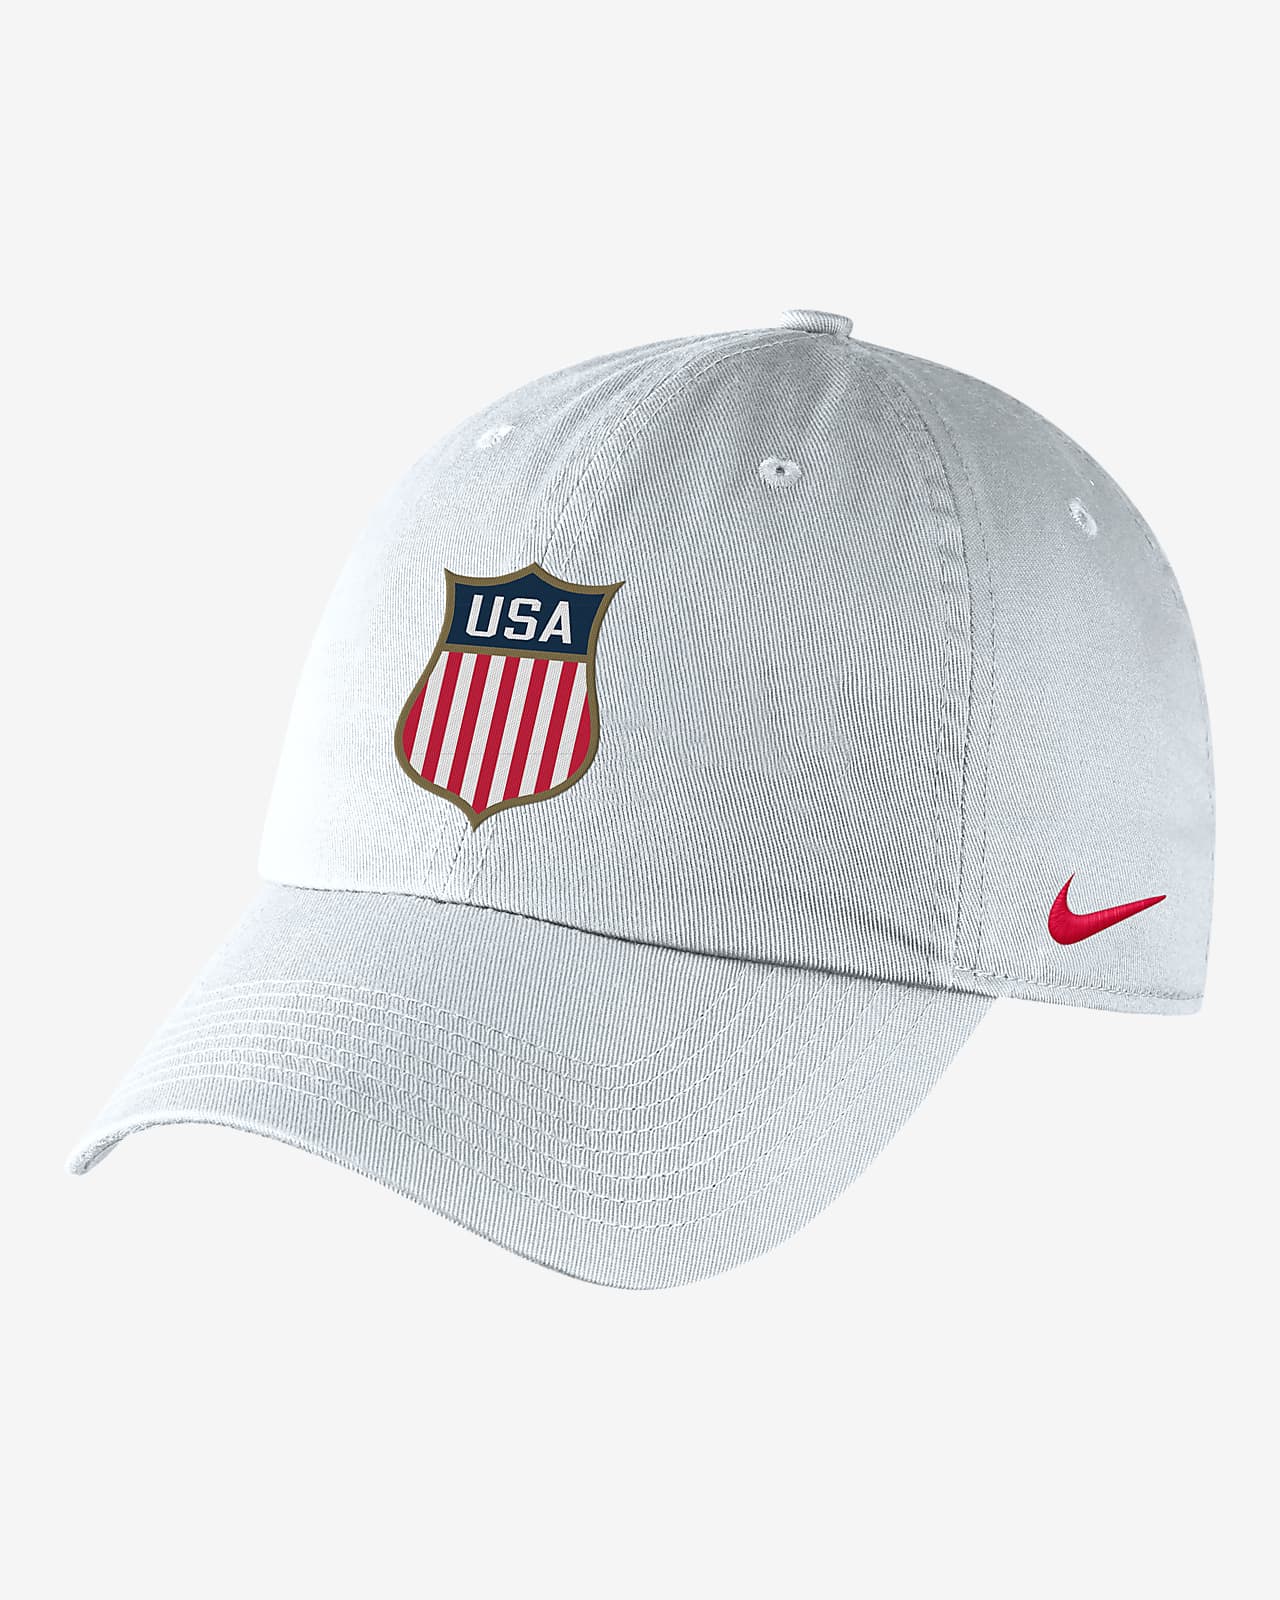 Nike Heritage86 Adjustable Hat.